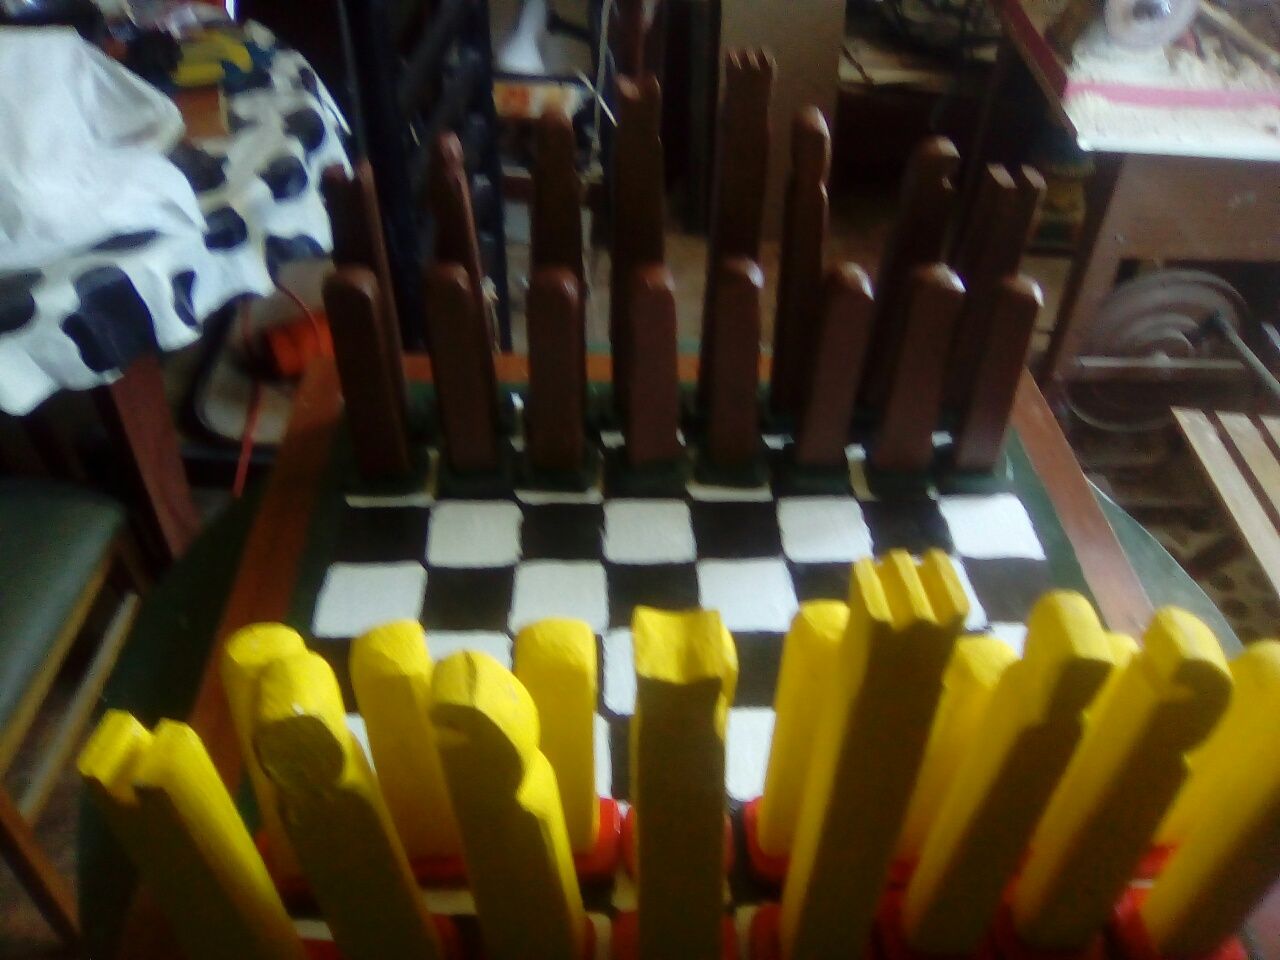 Jogo de xadrez de pecas altas artesanal em madeira